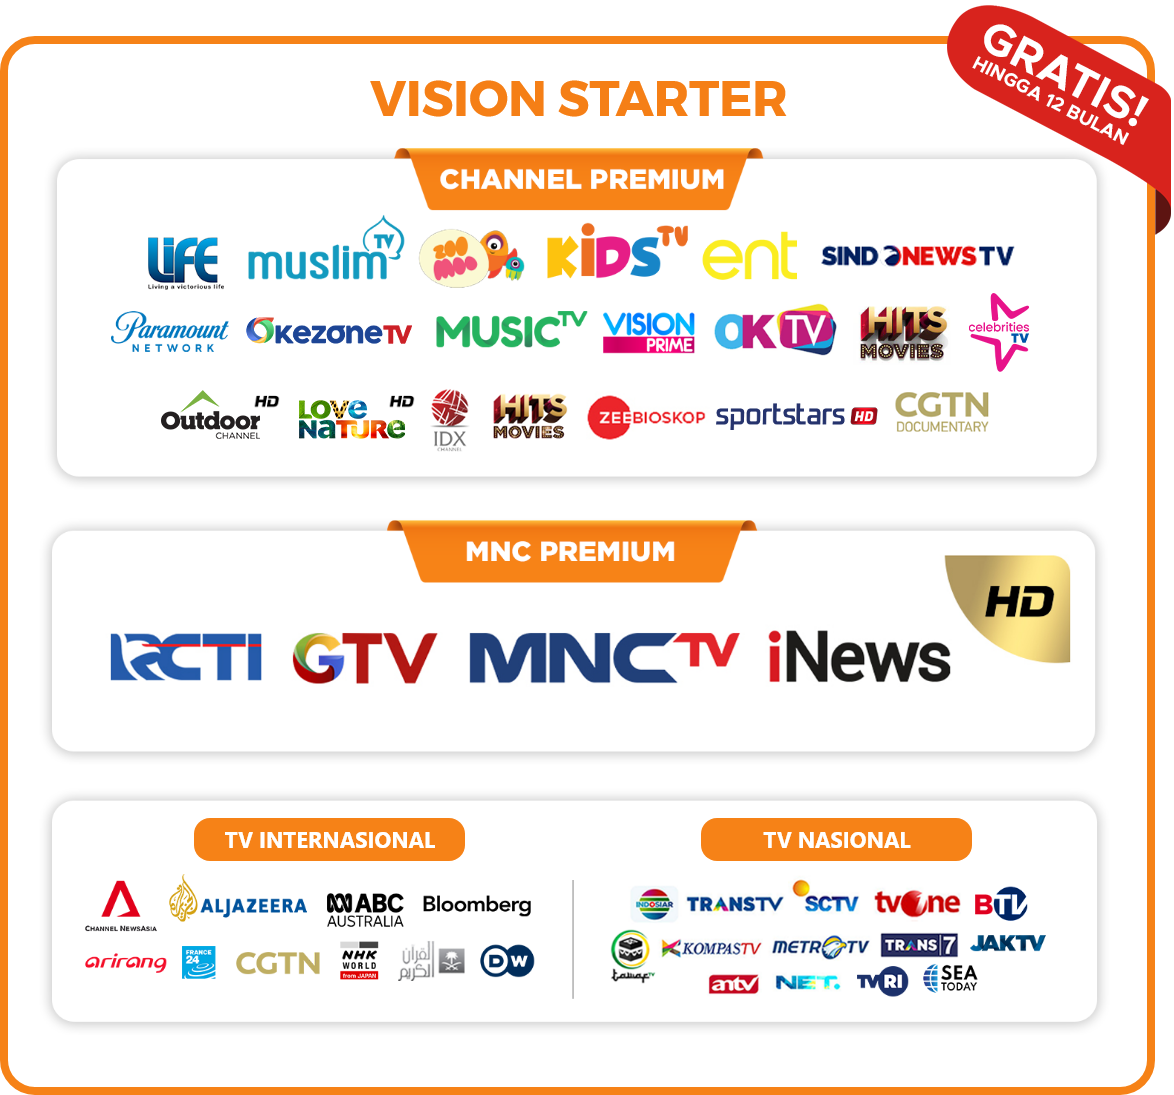 Channel vision starter